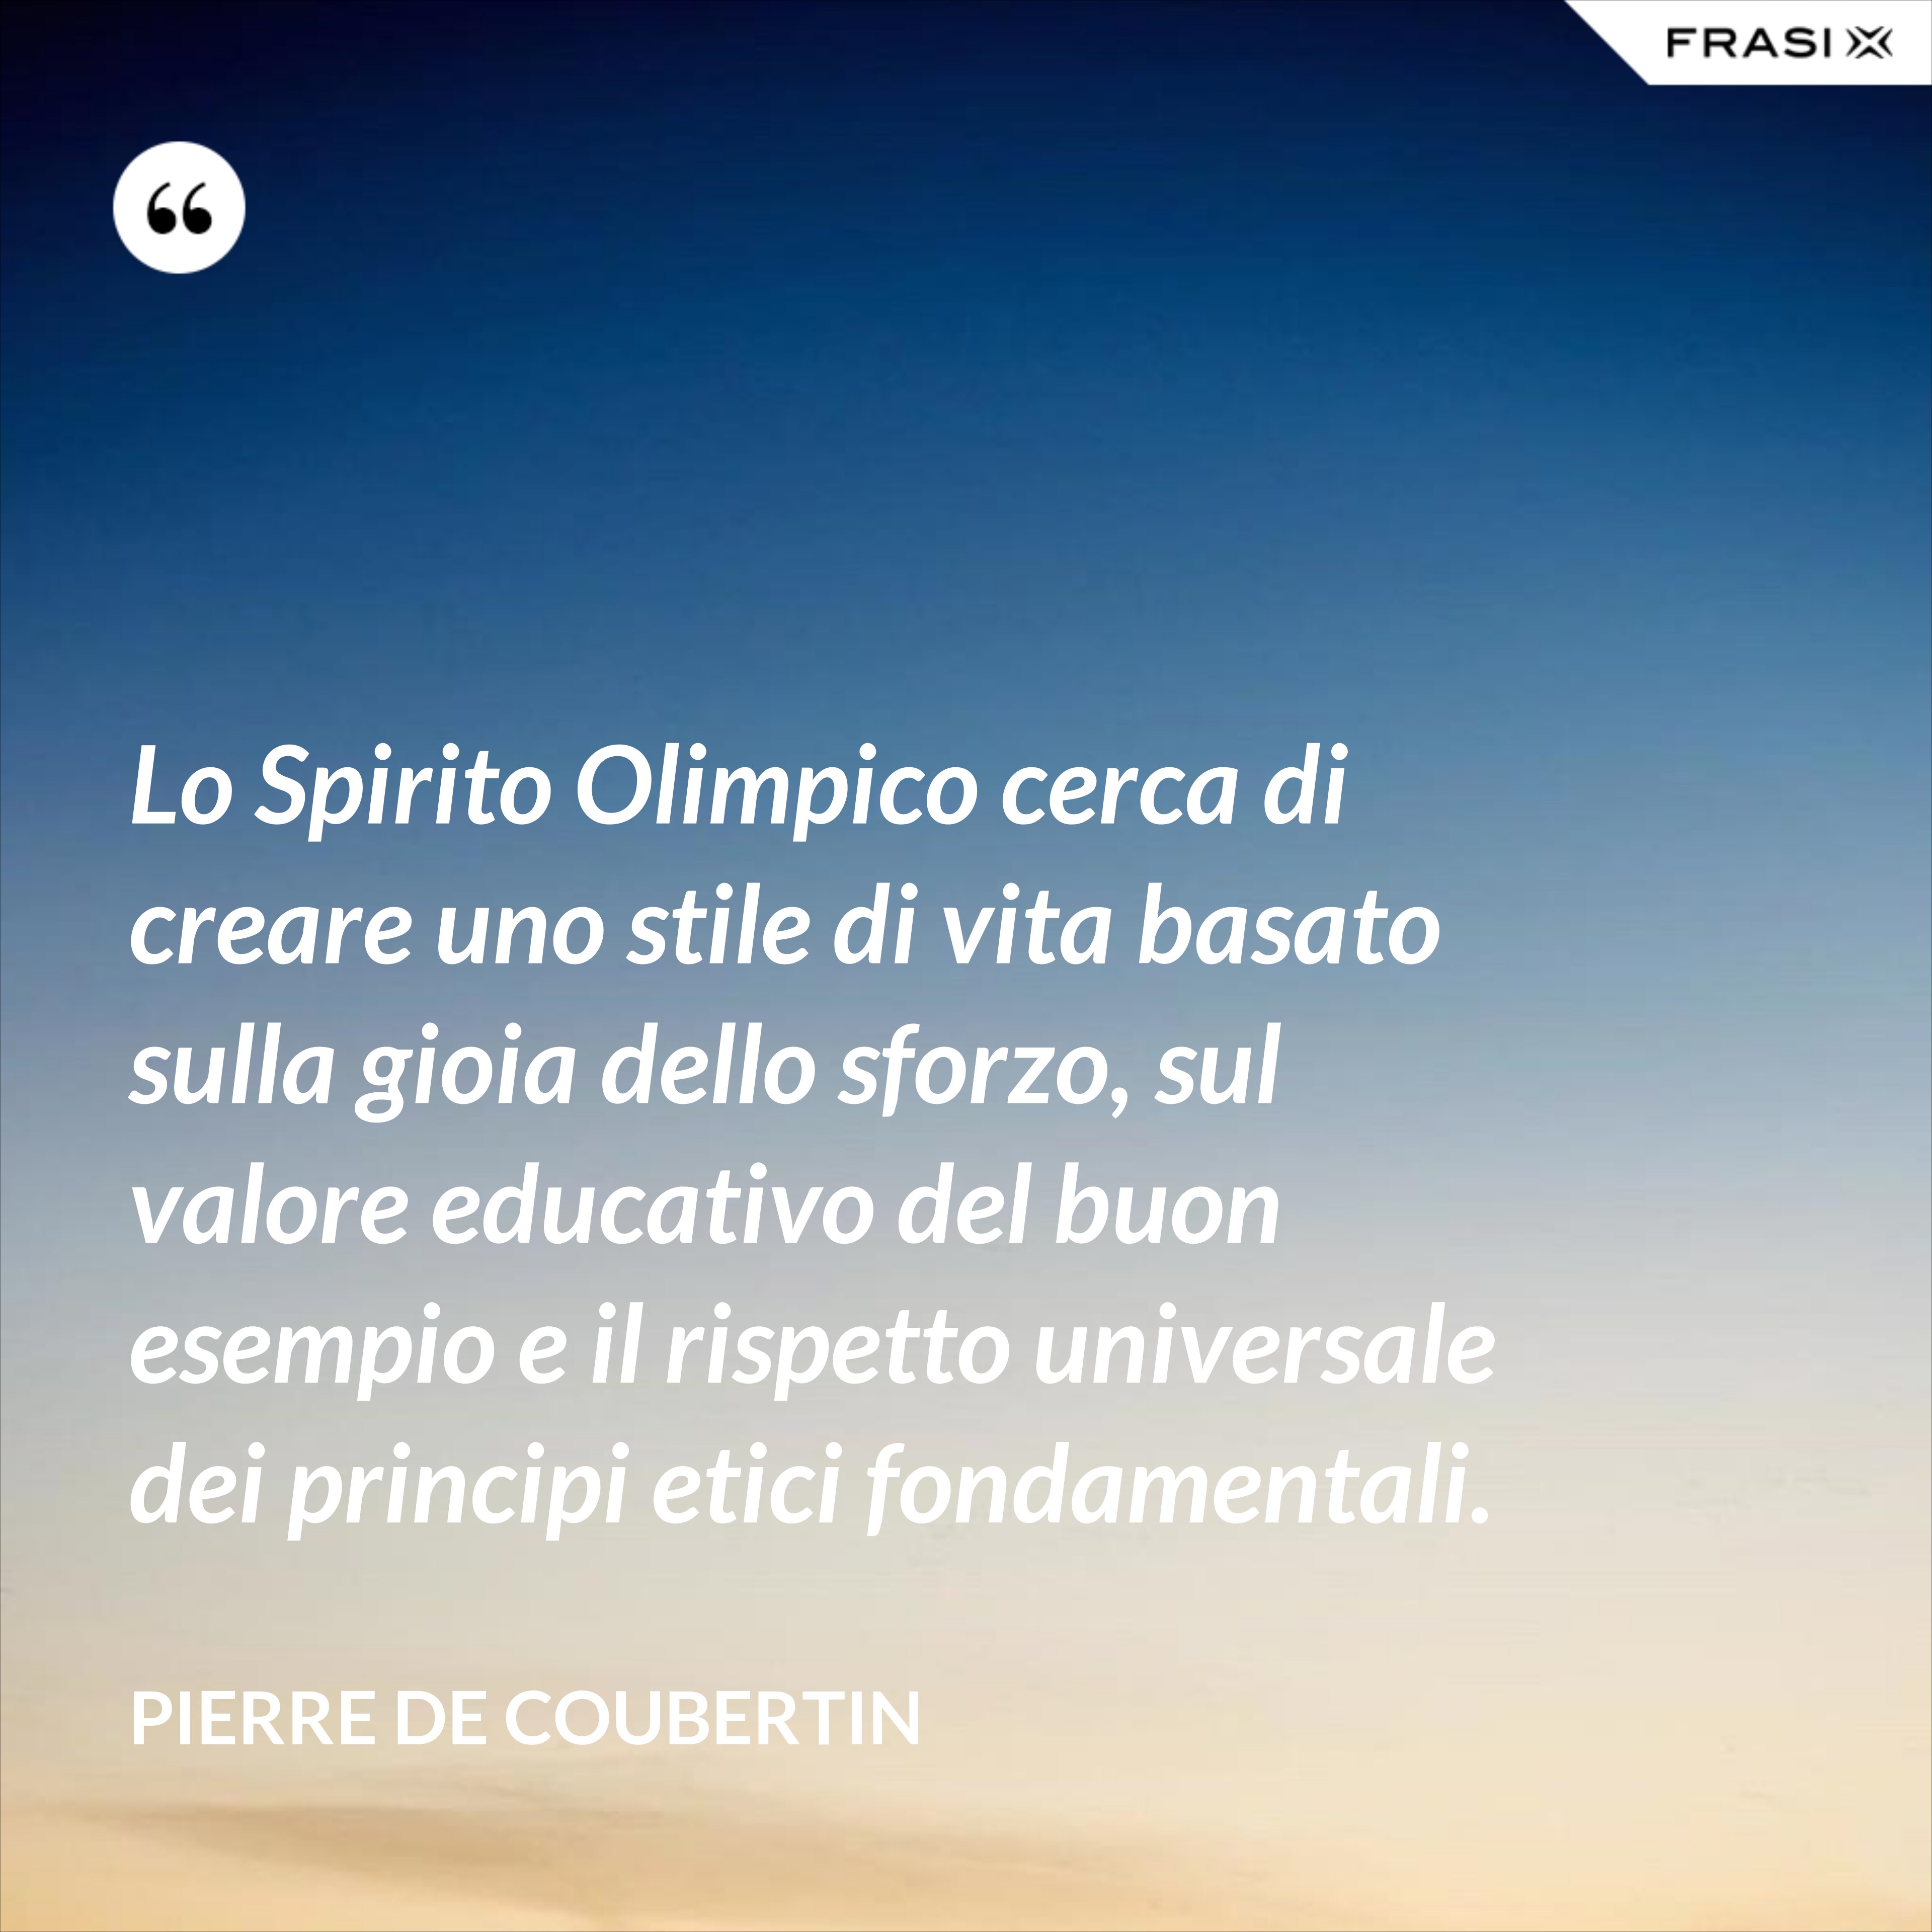 Lo Spirito Olimpico cerca di creare uno stile di vita basato sulla gioia dello sforzo, sul valore educativo del buon esempio e il rispetto universale dei principi etici fondamentali. - Pierre de Coubertin